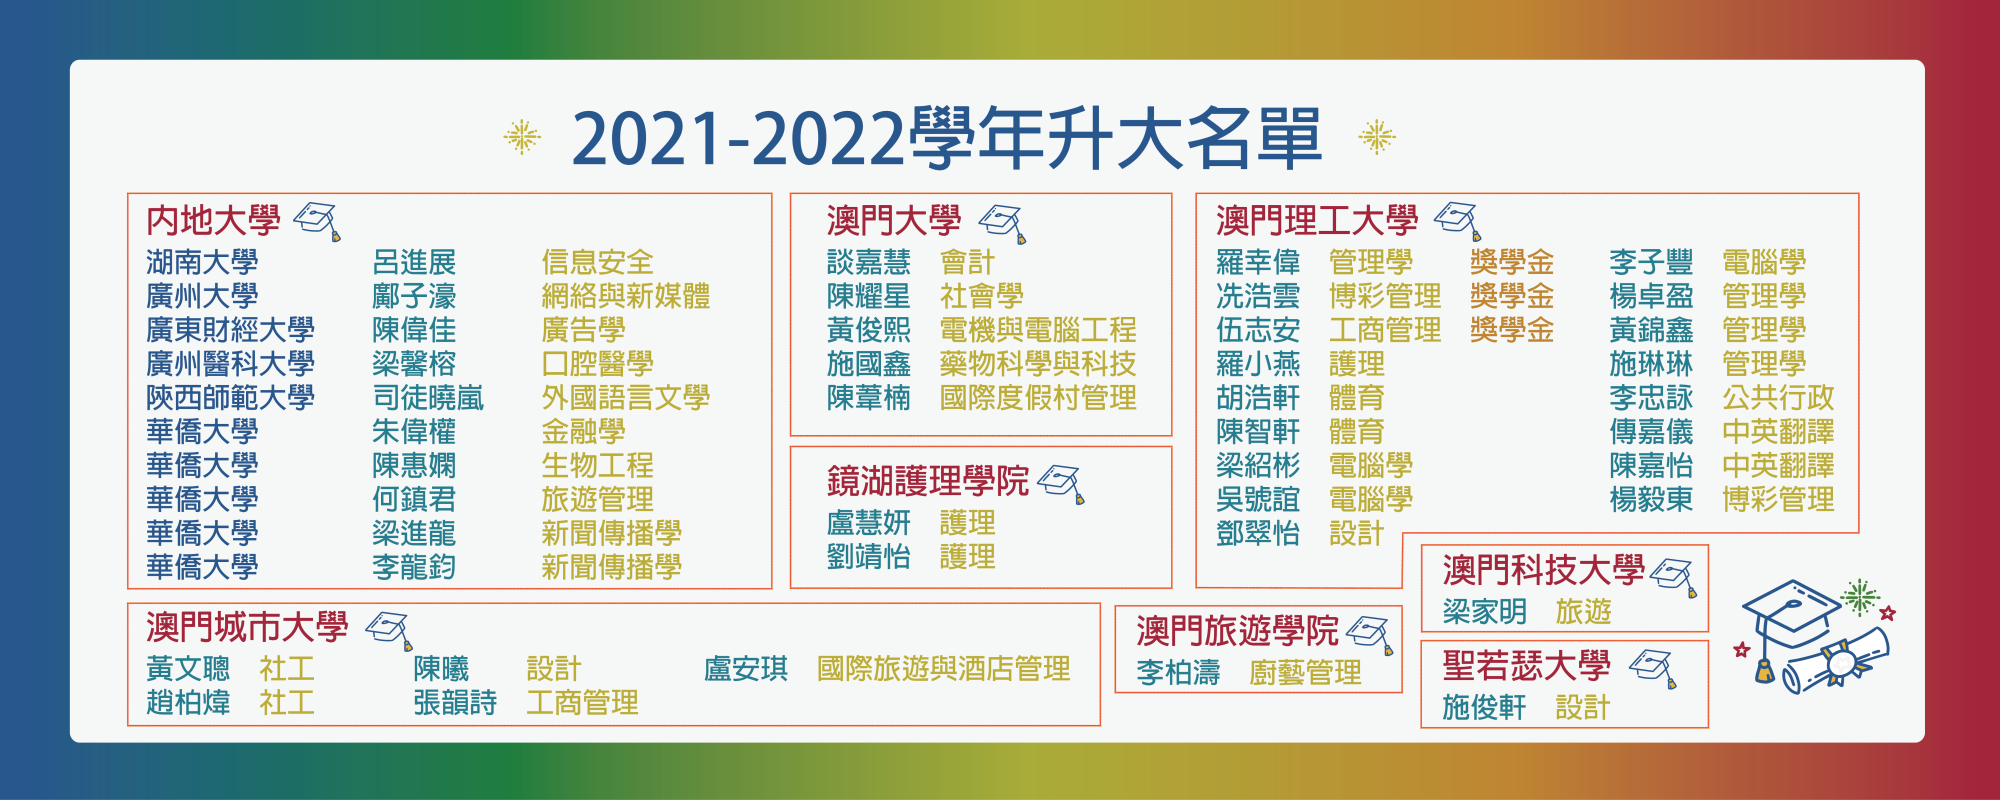 2021-2022學年第37屆升大榜(夜間部)